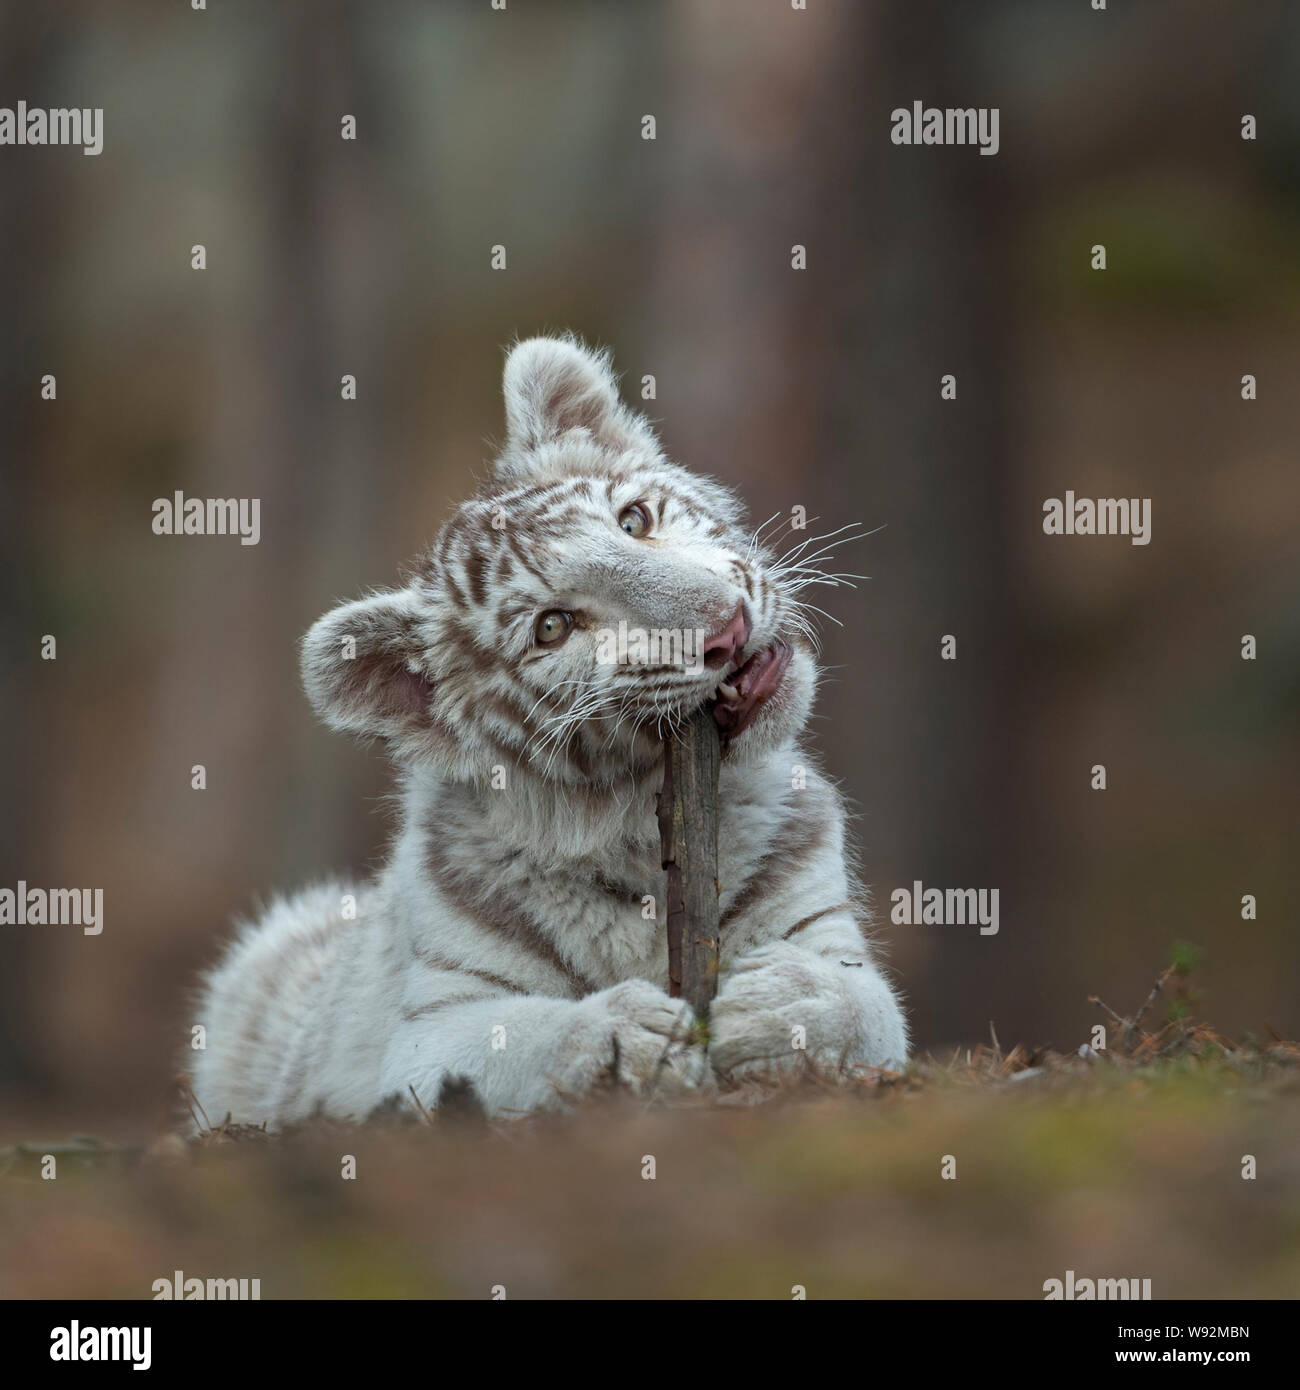 Royal Bengal Tiger/Koenigstiger (Panthera tigris), jungen Cub, auf dem Boden liegend von einem Wald, spielen mit, beißen auf einem Holzstab, sieht niedlich Stockfoto